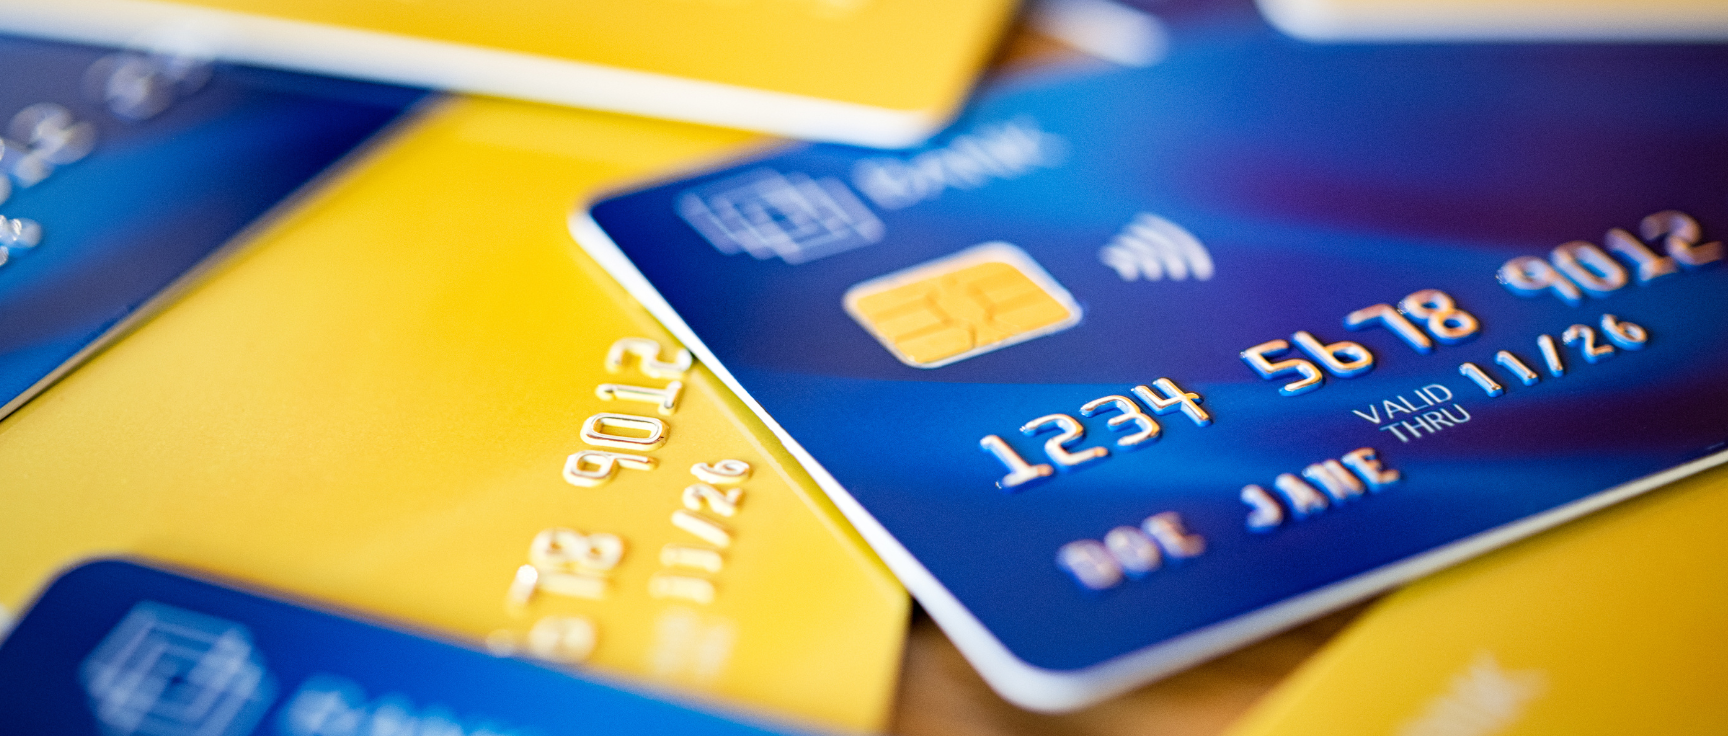 Como cancelar uma compra no cartão de crédito? Entenda